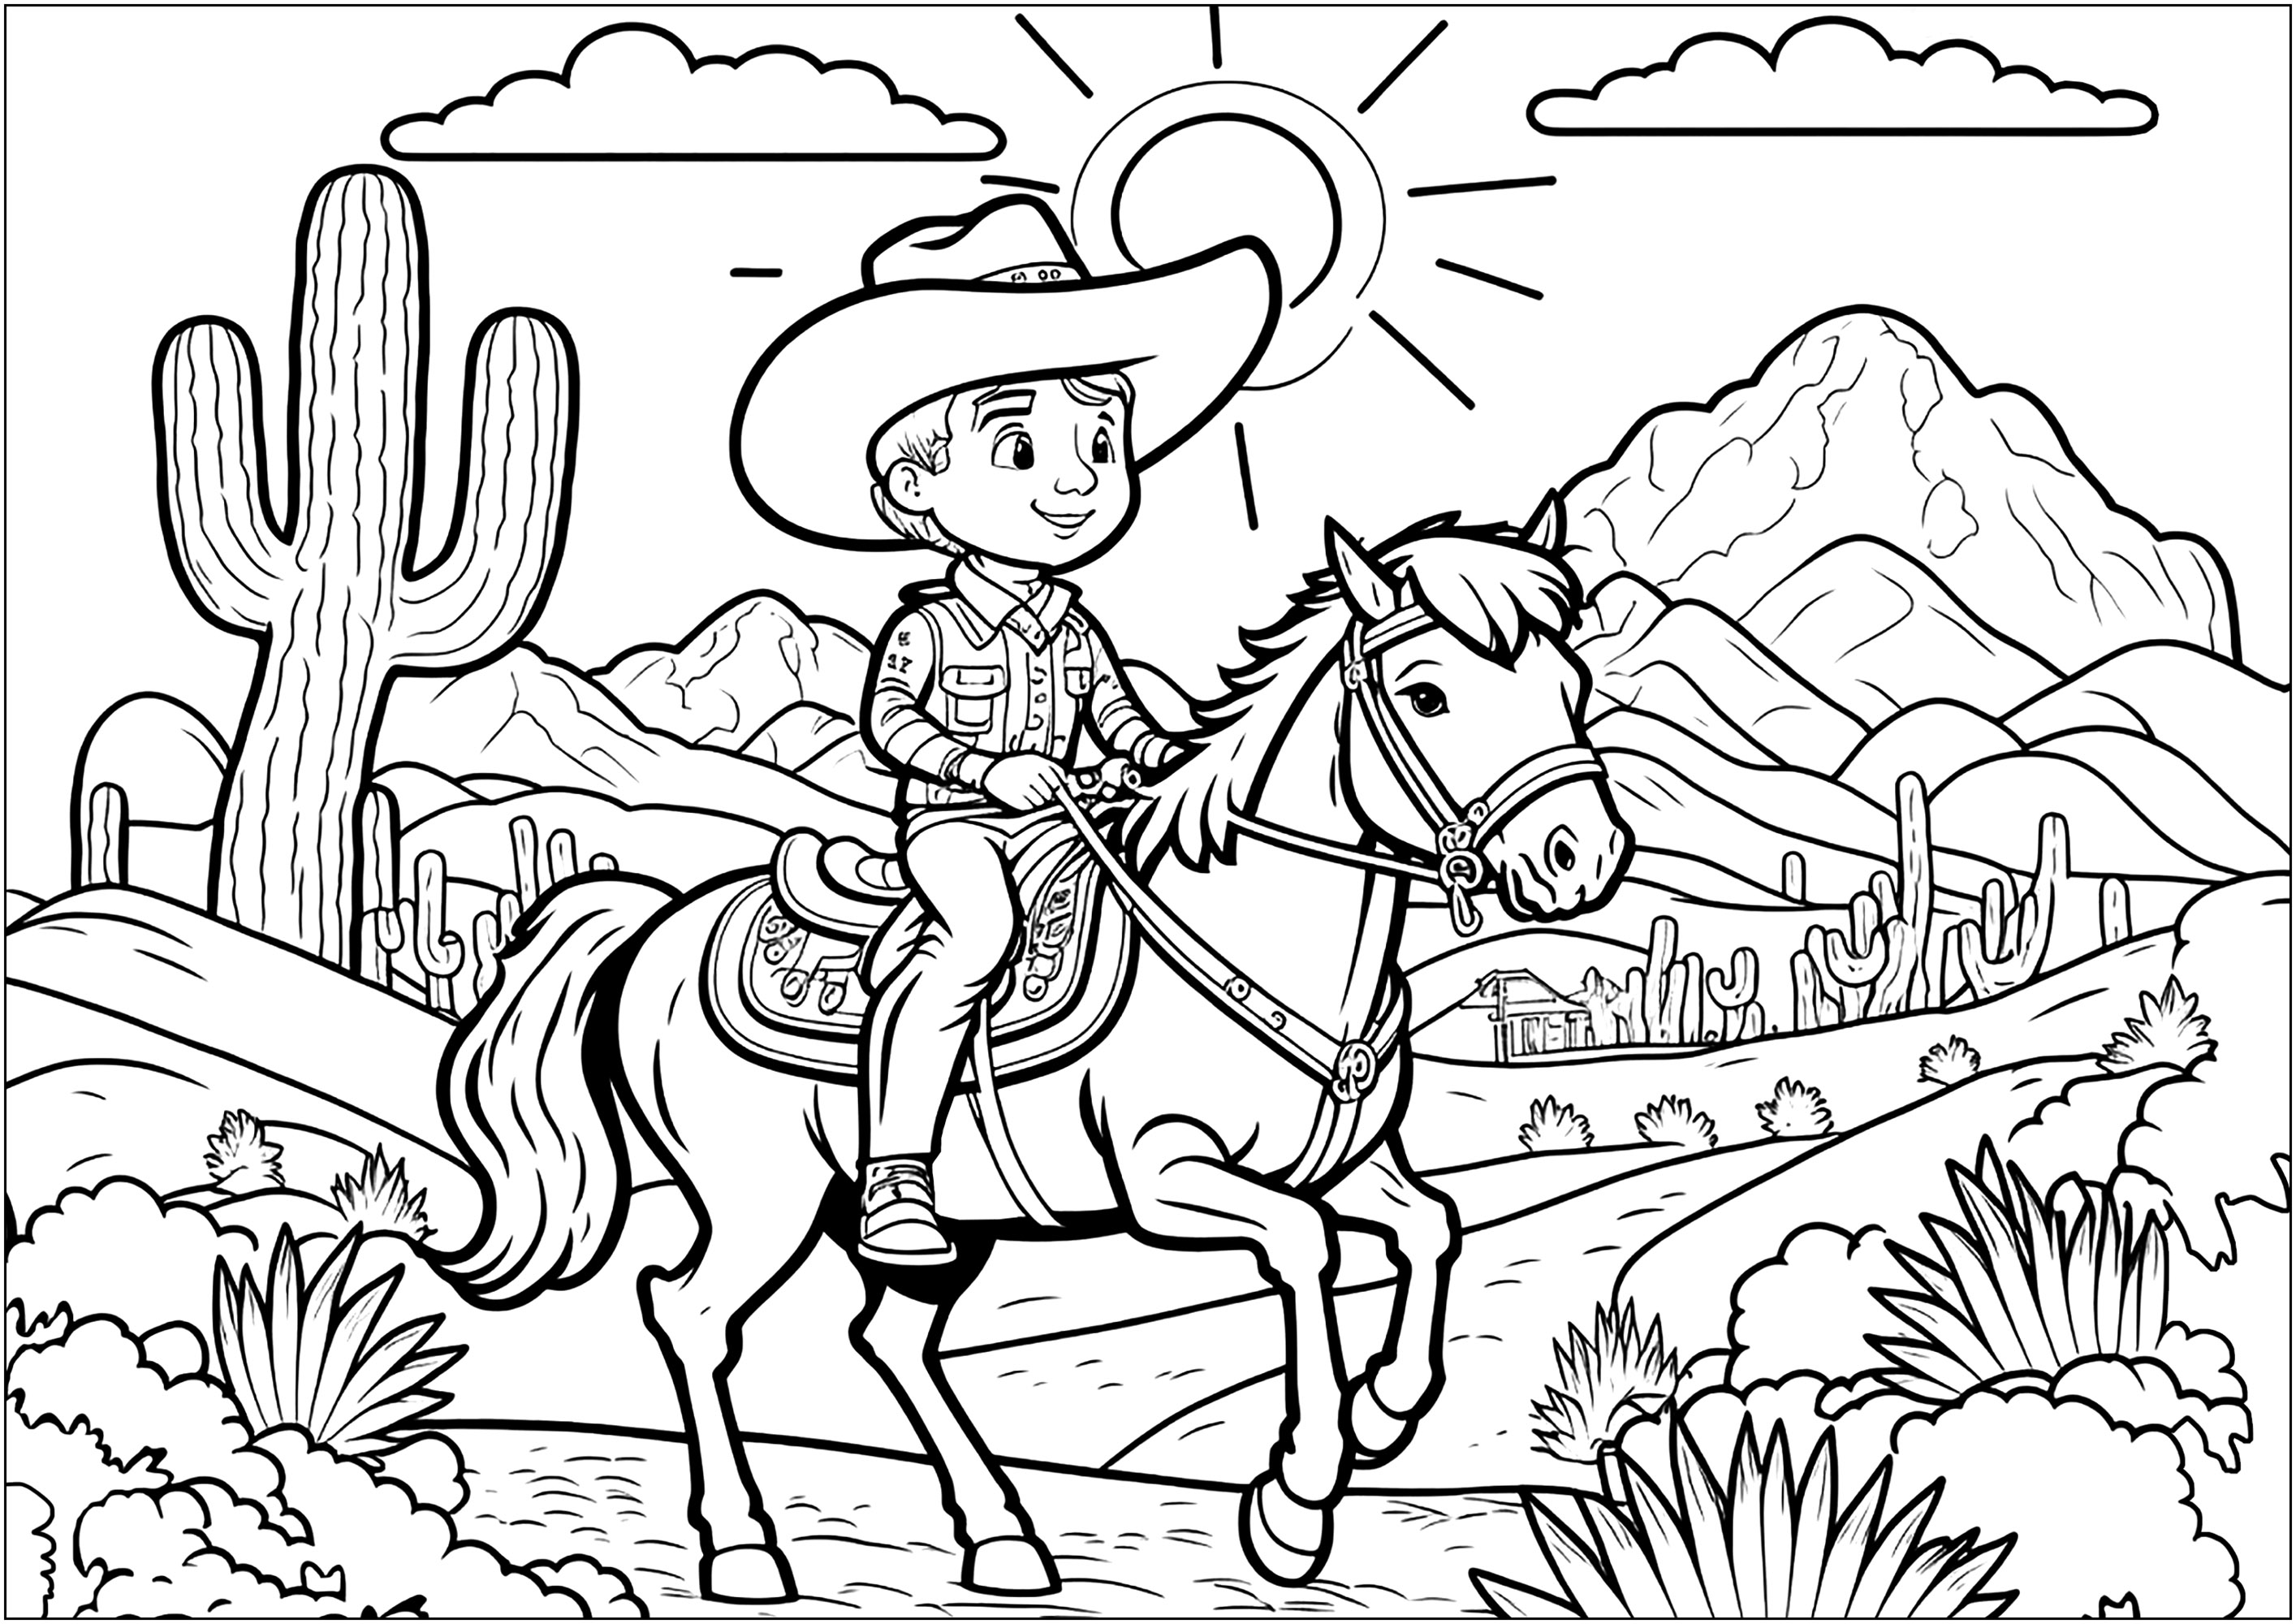 O jovem Cowboy no seu cavalo, e a paisagem do Oeste Selvagem, para colorir